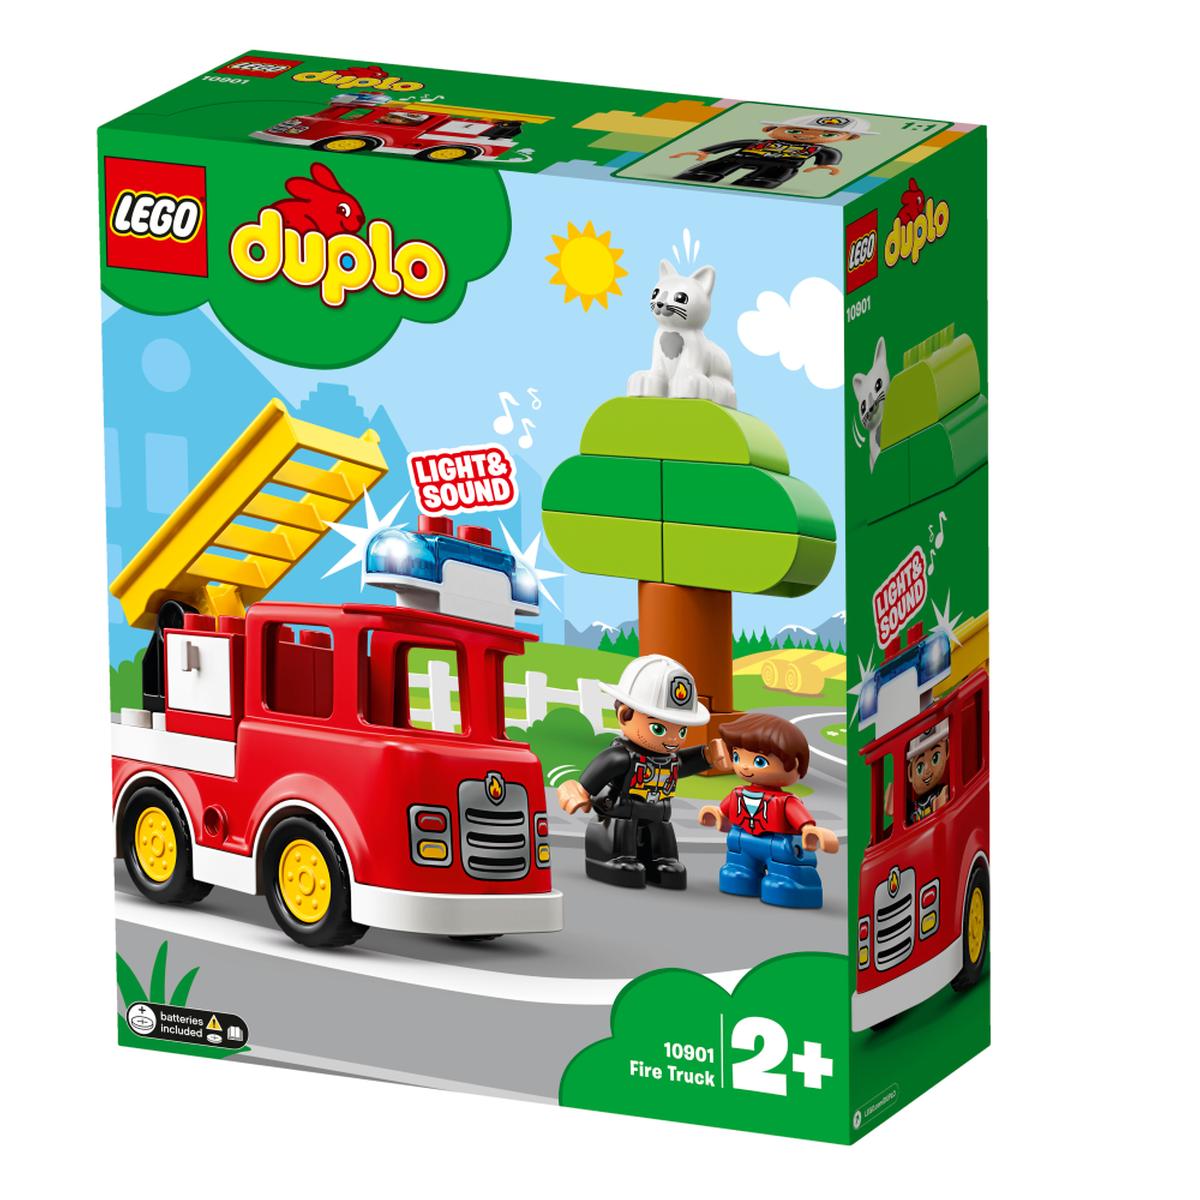 LEGO DUPLO - Camión de Bomberos - 10901 | Duplo Villa | Toys"R"Us España